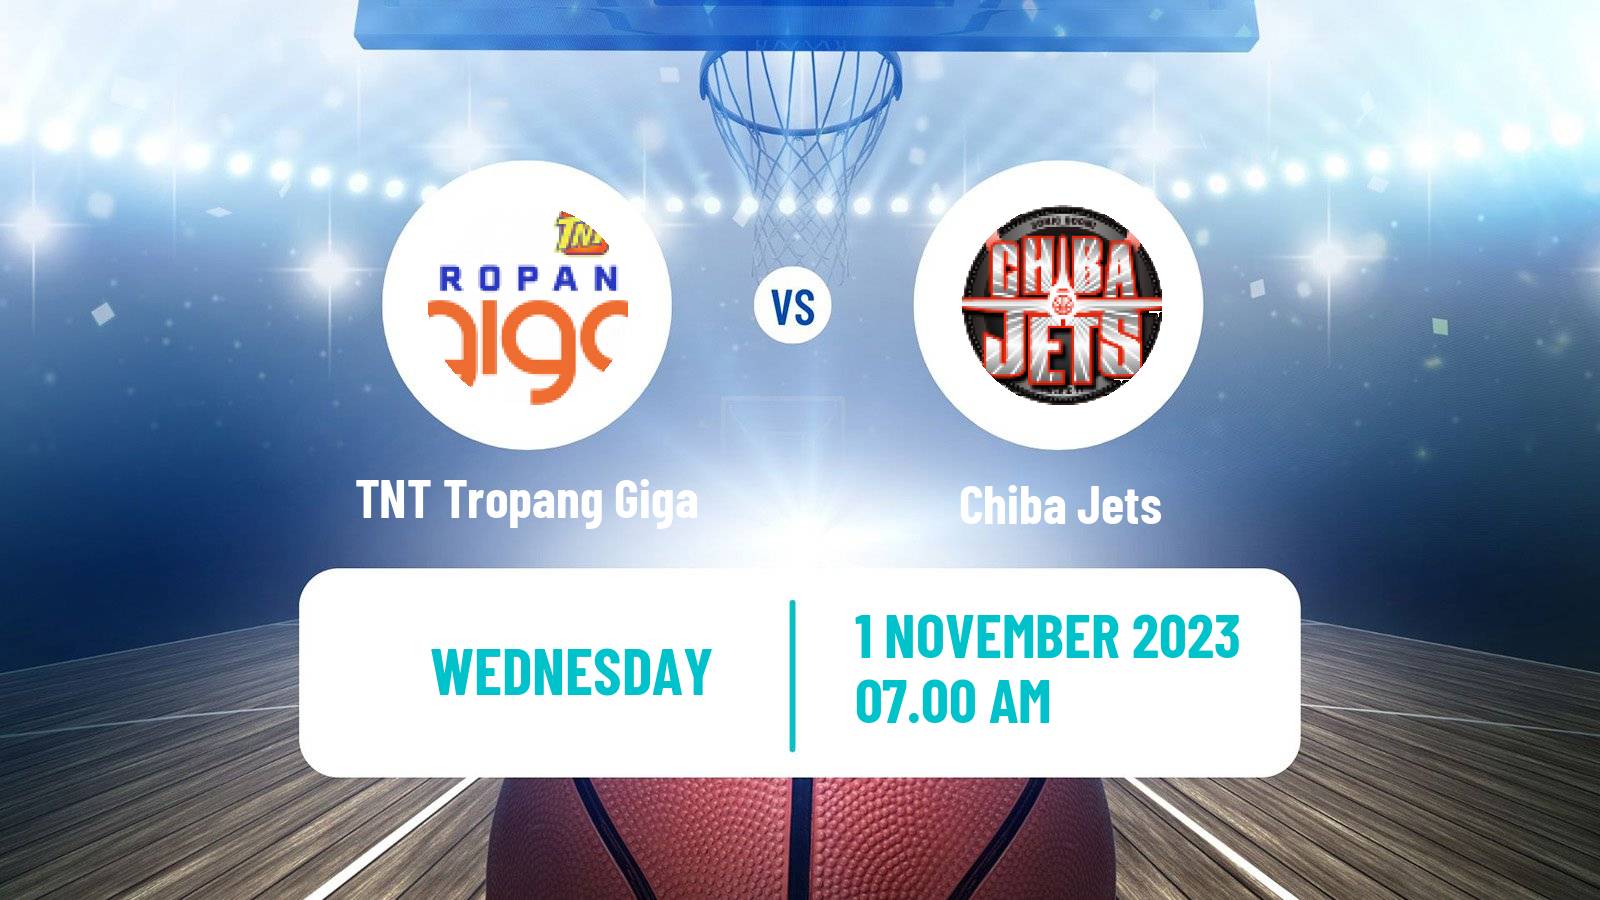 Basketball EASL Basketball TNT Tropang Giga - Chiba Jets